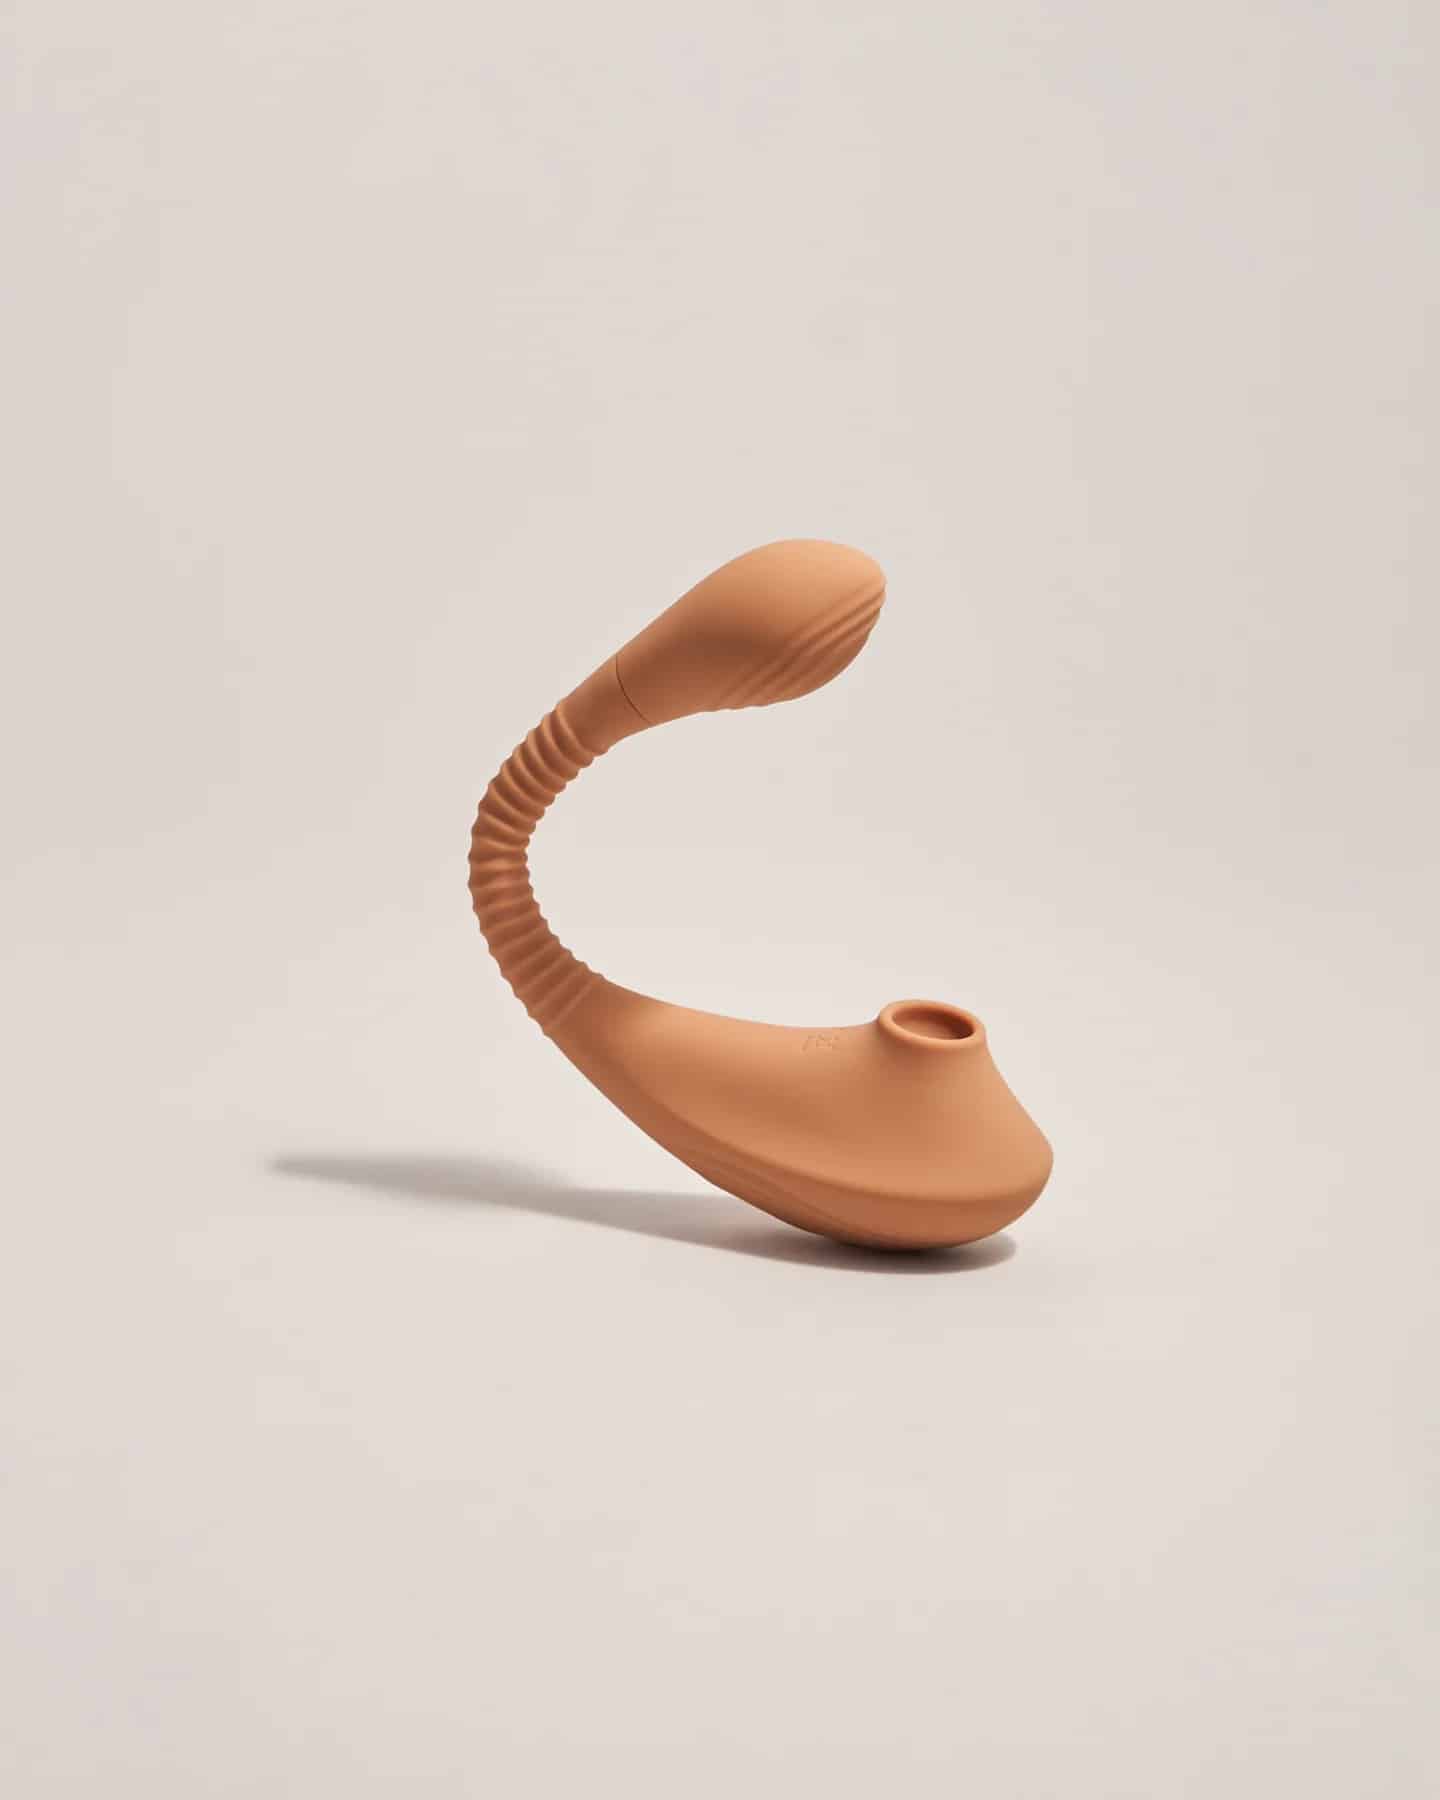 Succionador-clitoris-dildo-vulva_1440x1800